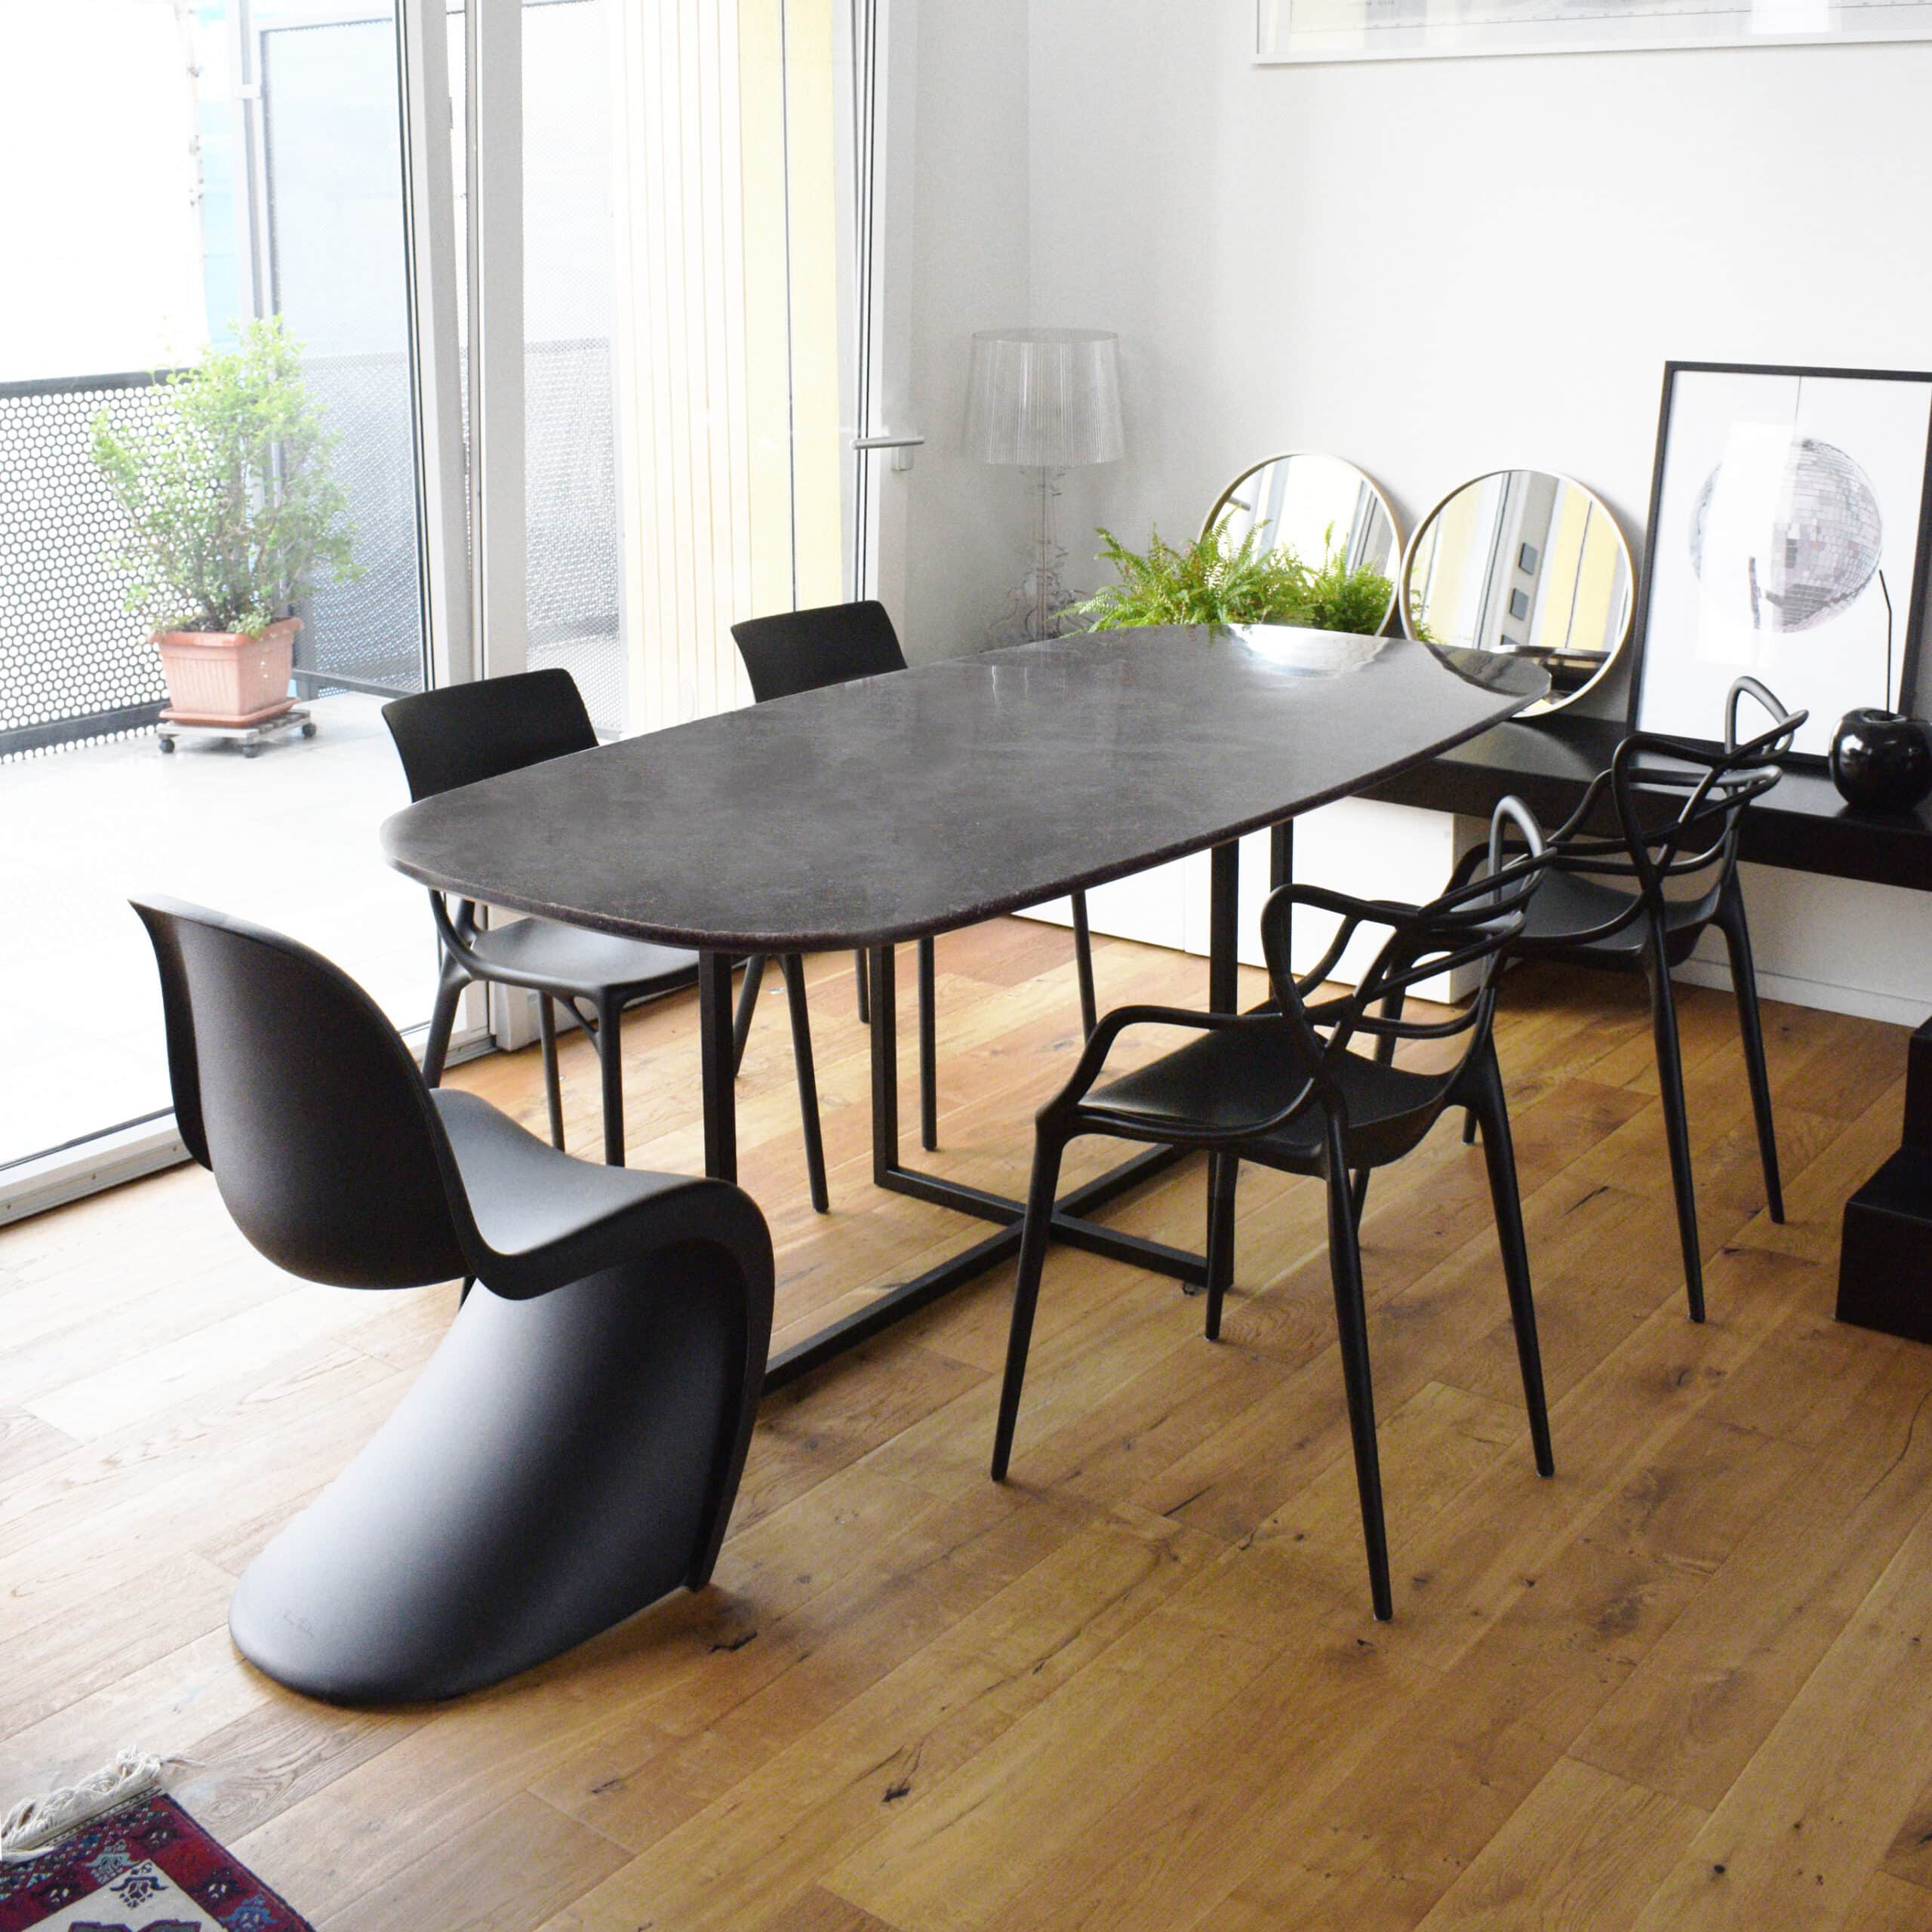 Un tavolo moderno con piano scuro in plastica 100% riciclata e riciclabile, circondato da sedie di design nero, in un ambiente luminoso con pavimento in legno. La stanza è arredata con elementi minimalisti, tra cui specchi decorativi e piante verdi.